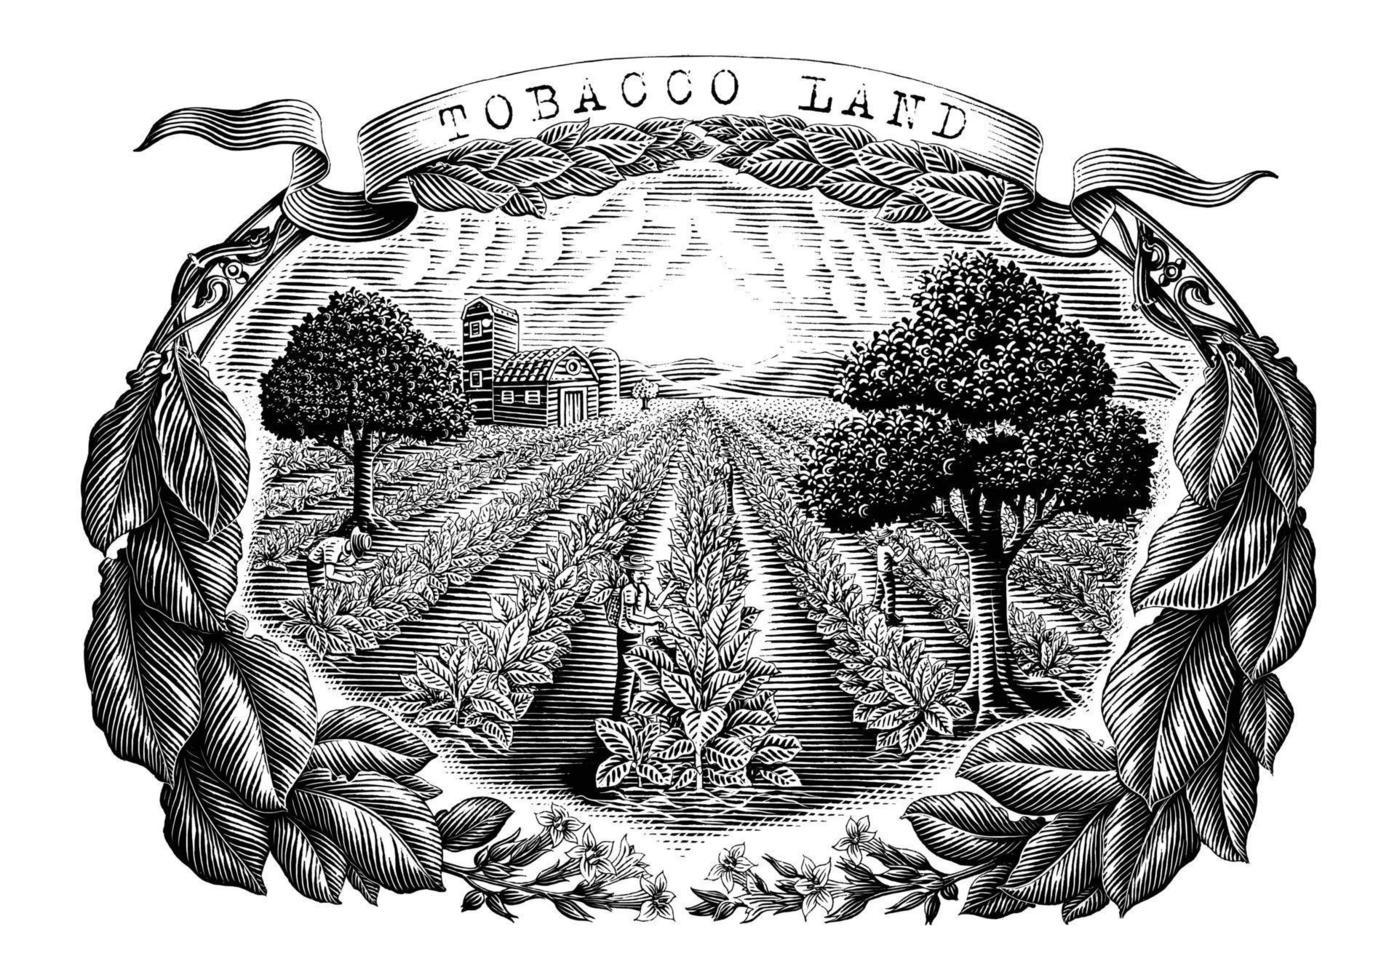 mão de terra de tabaco desenhar estilo de gravura vintage clip-art preto e branco isolado no fundo branco vetor